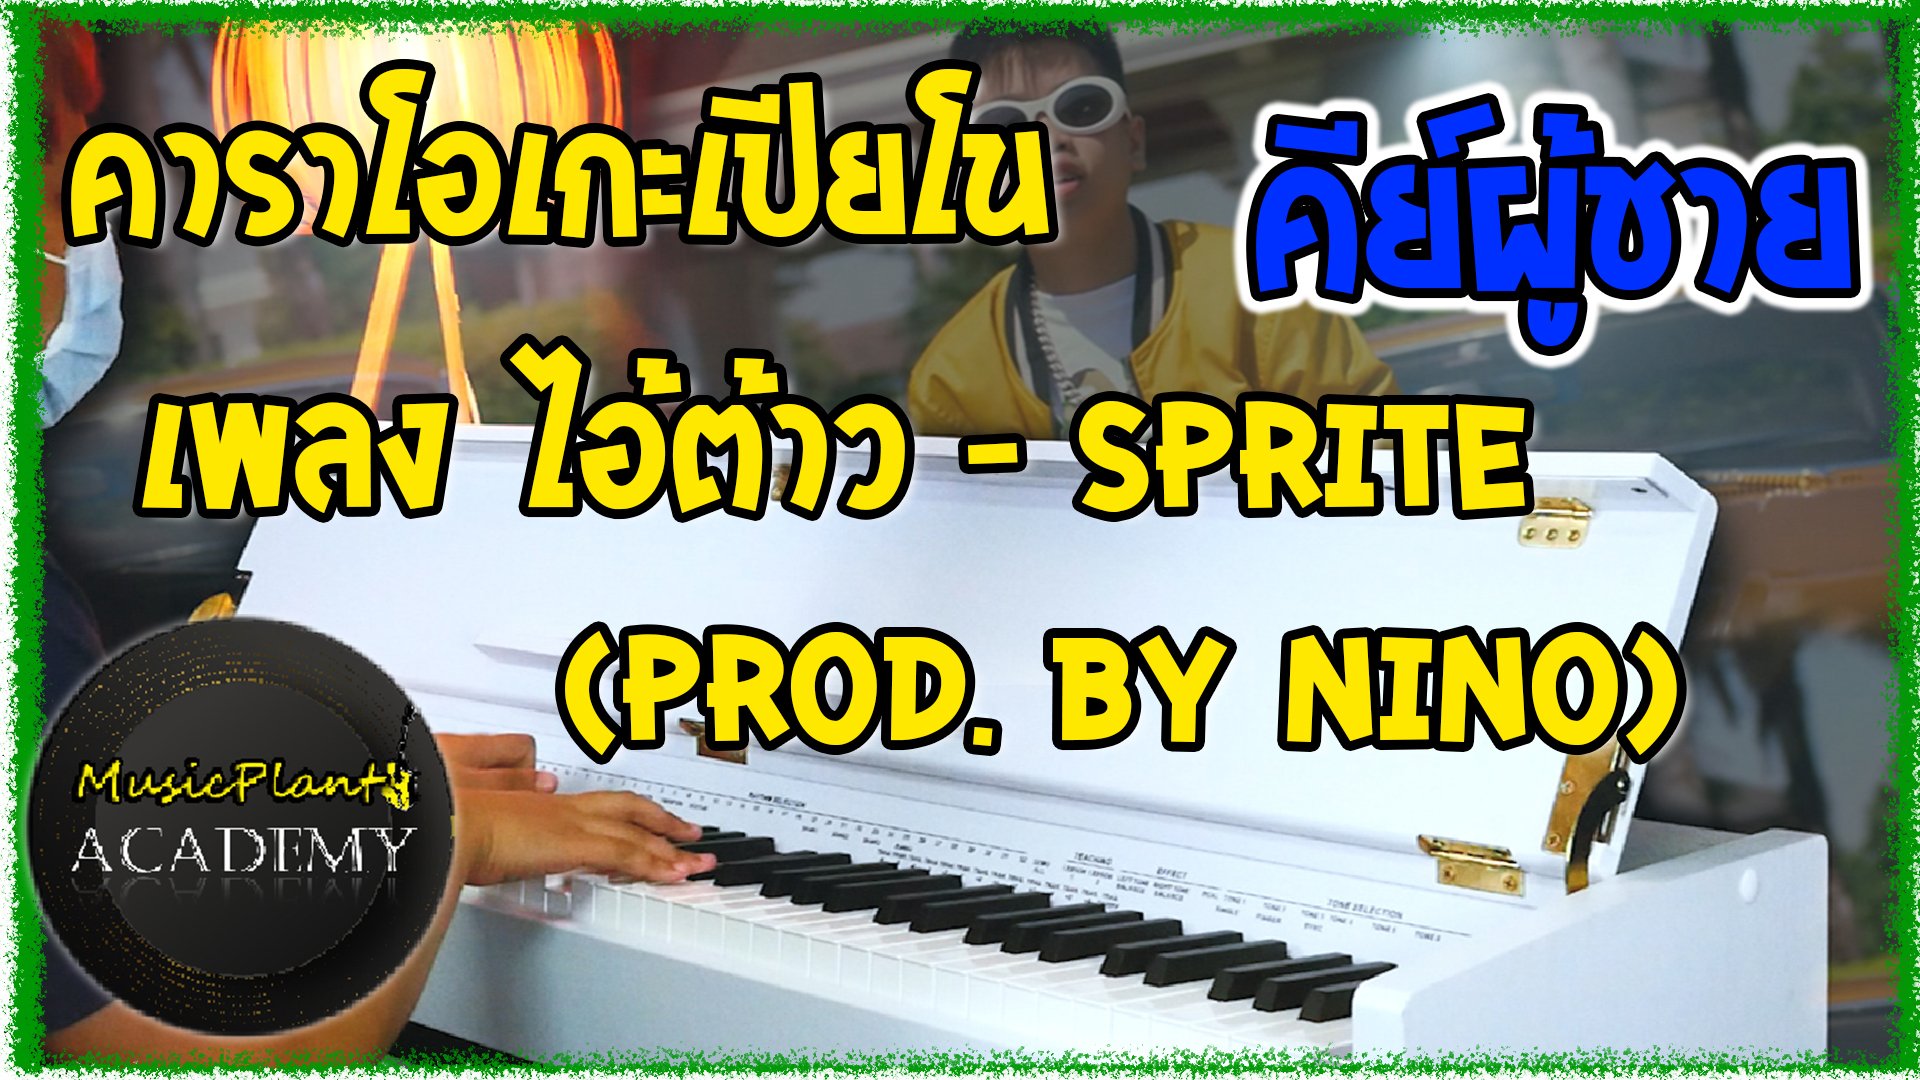 คาราโอเกะเปียโน Cover เพลง ไอ้ต้าว SPRITE - (Prod. By NINO) คีย์ผู้ชาย